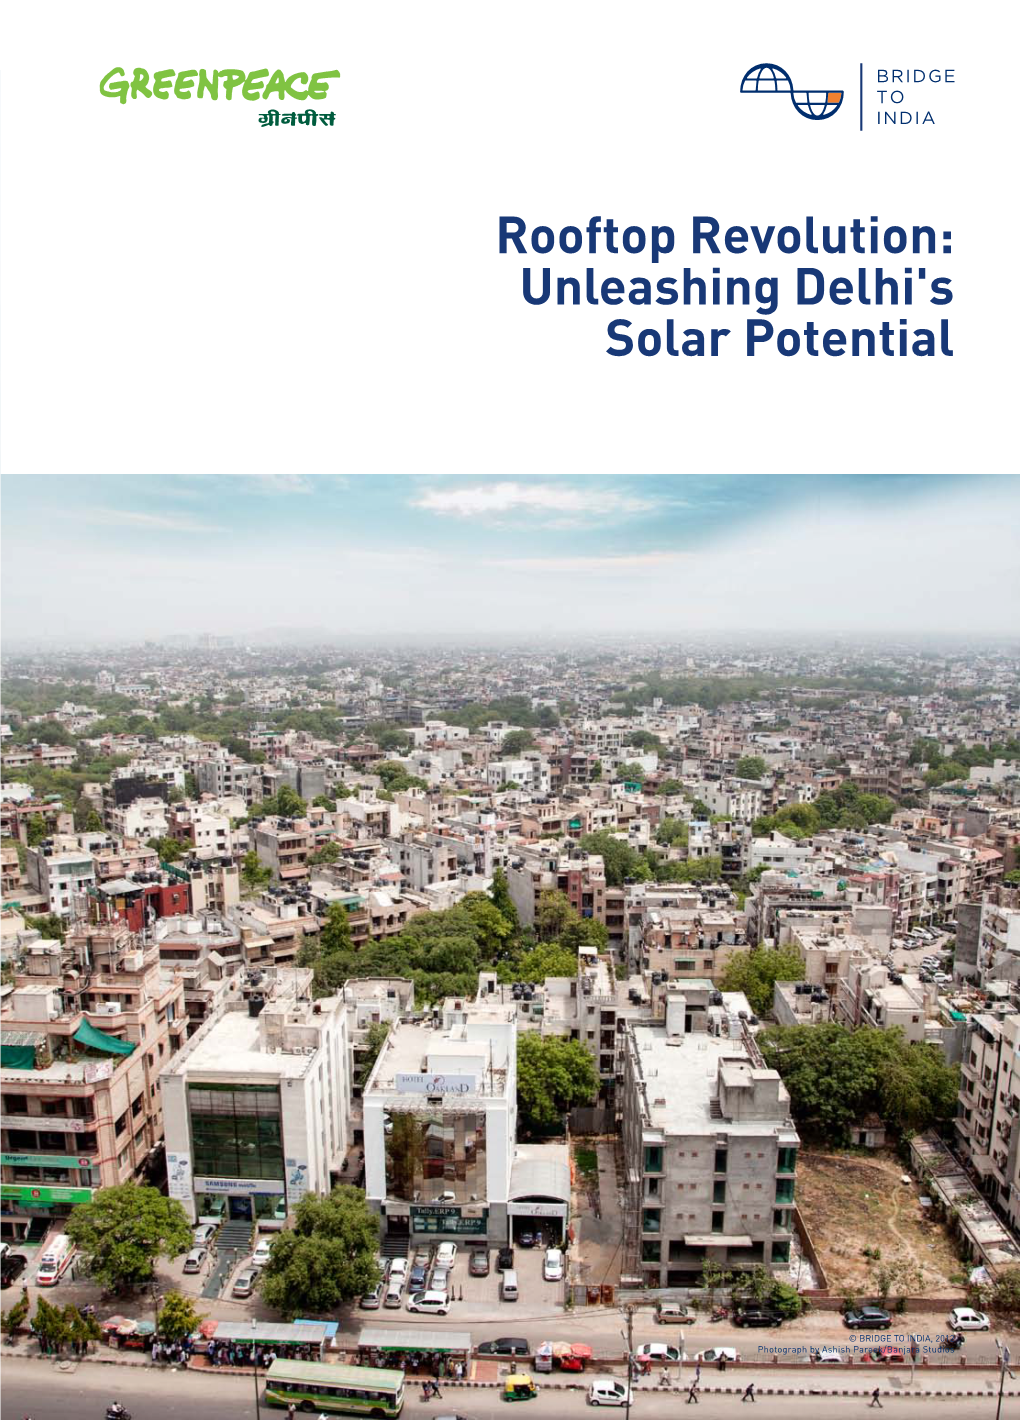 Rooftop Revolution: Unleashing Delhi's Solar Potential